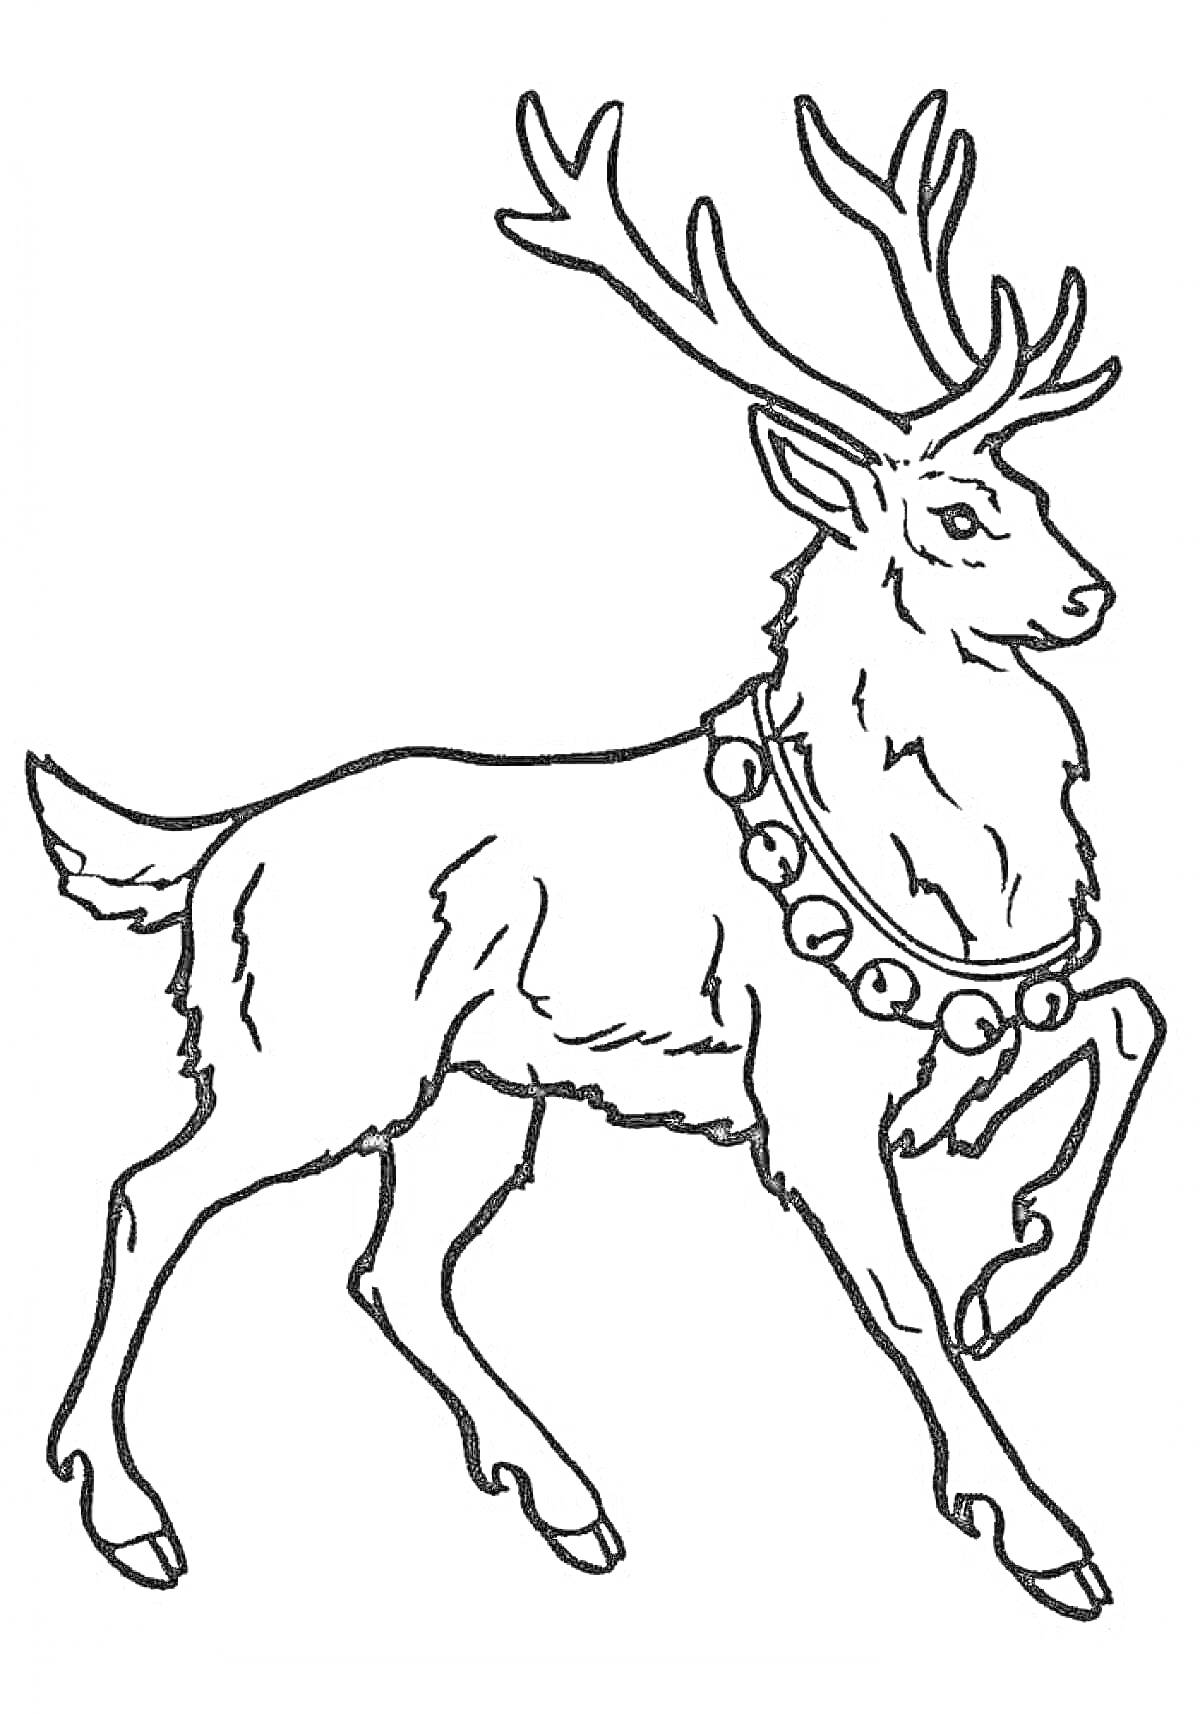 северный олень с колокольчиком на шее